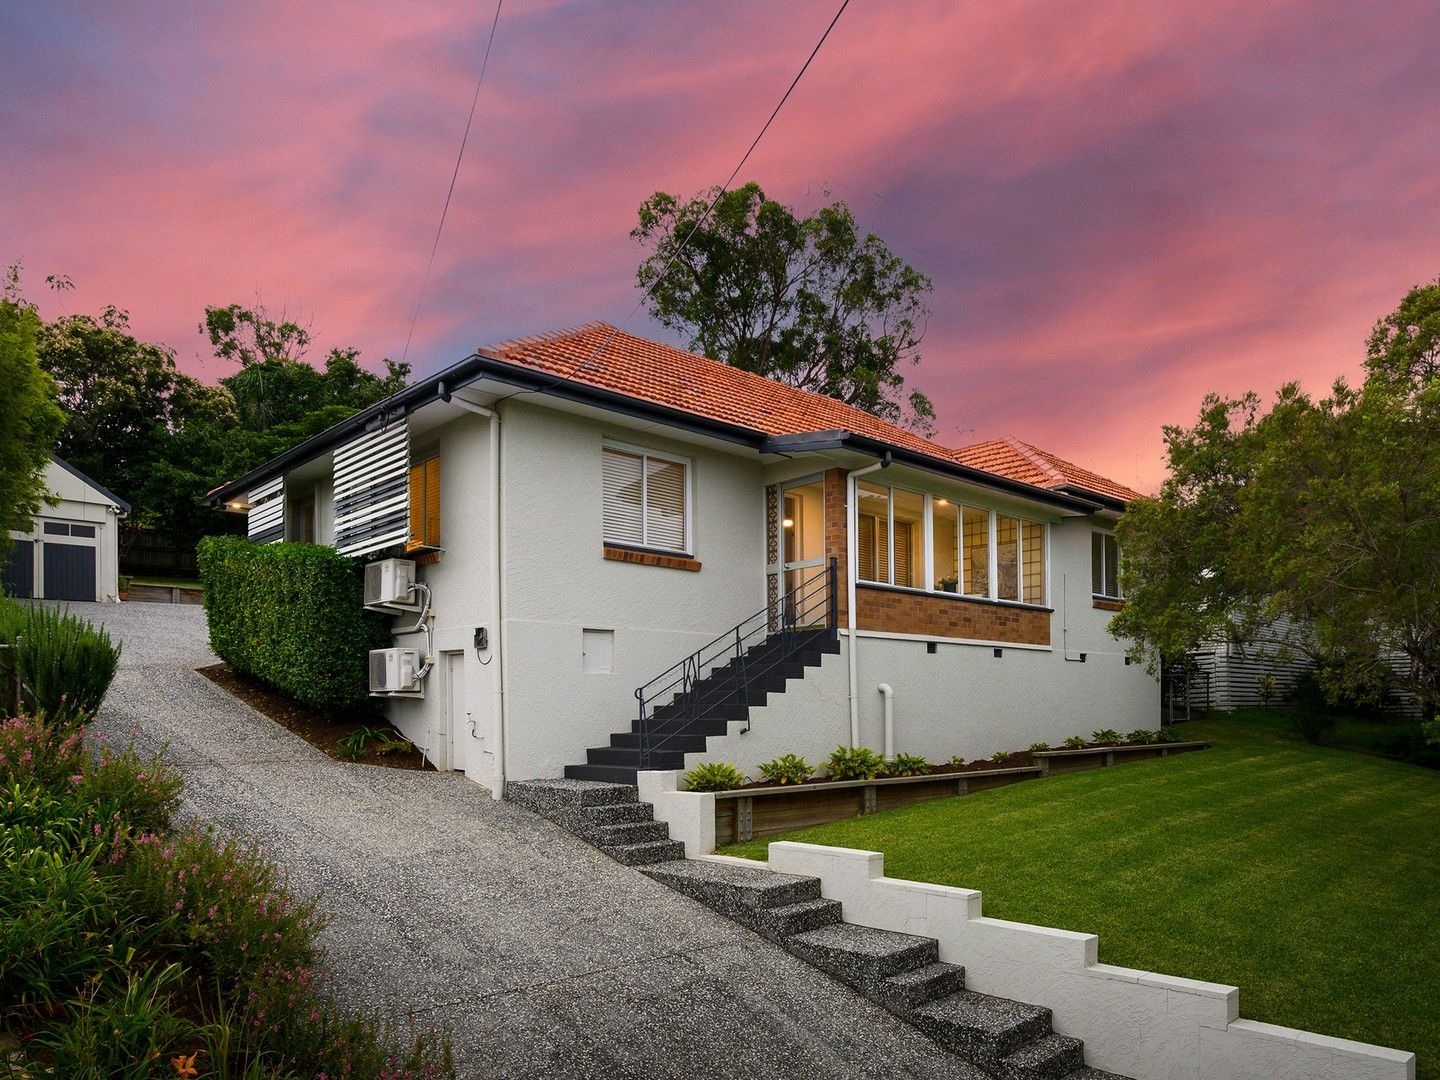 3 bedrooms House in 110 Creek Road MOUNT GRAVATT EAST QLD, 4122